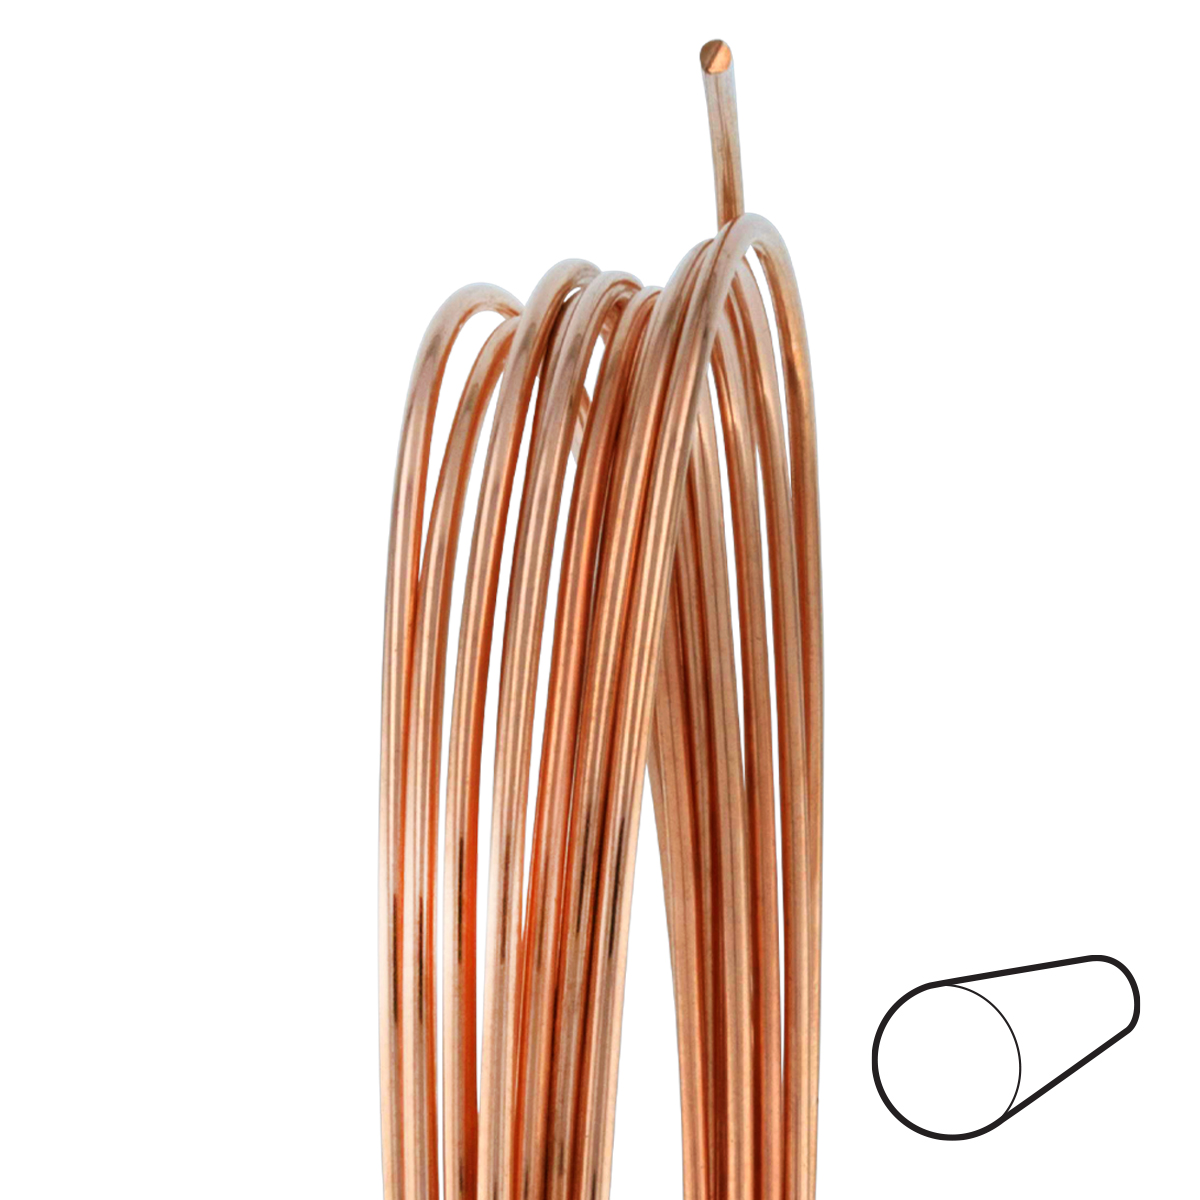 12 Gauge Round Dead Soft Copper Wire: Wire Jewelry, Wire Wrap Tutorials